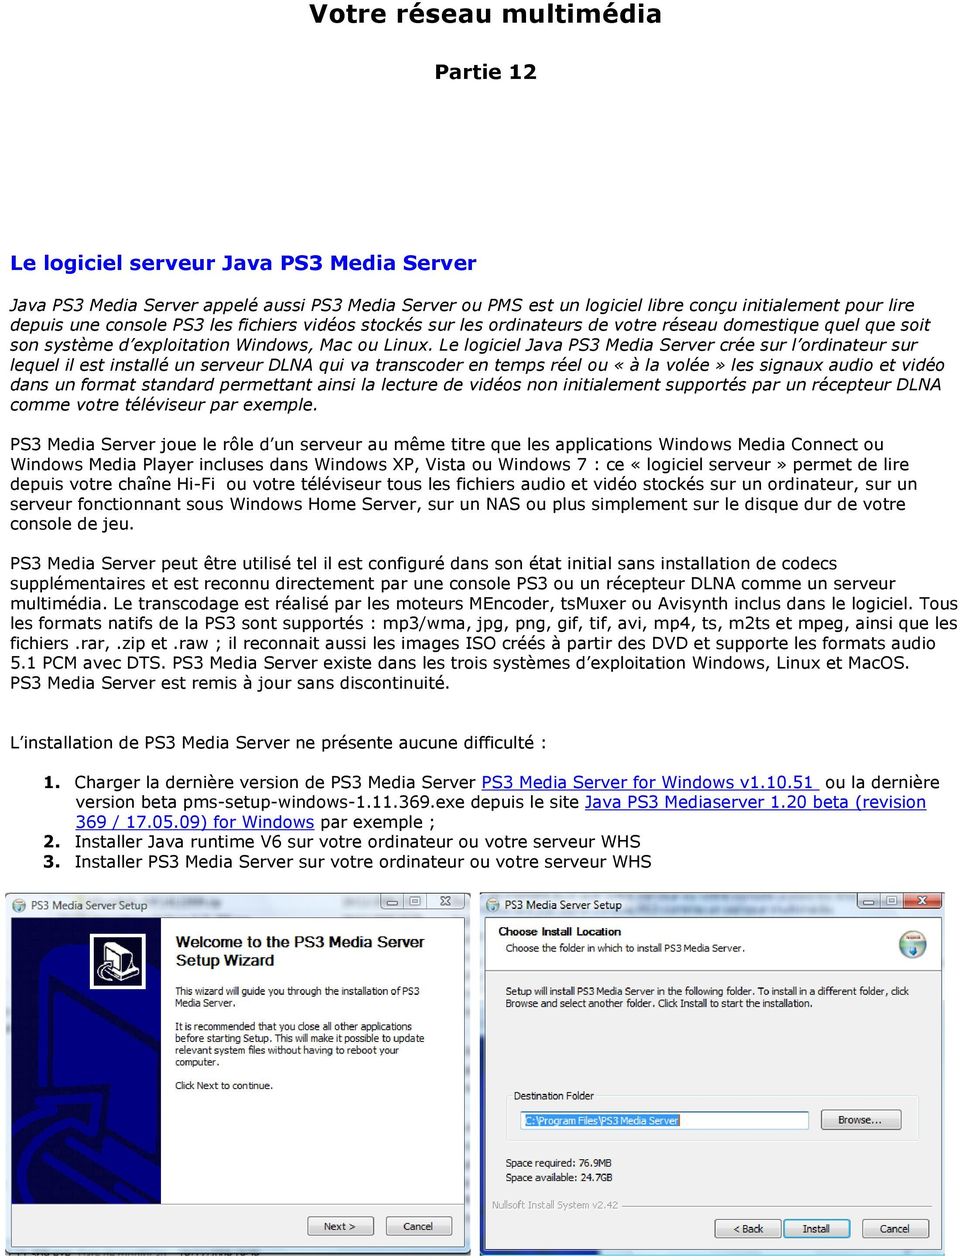 Le logiciel Java PS3 Media Server crée sur l ordinateur sur lequel il est installé un serveur DLNA qui va transcoder en temps réel ou «à la volée» les signaux audio et vidéo dans un format standard